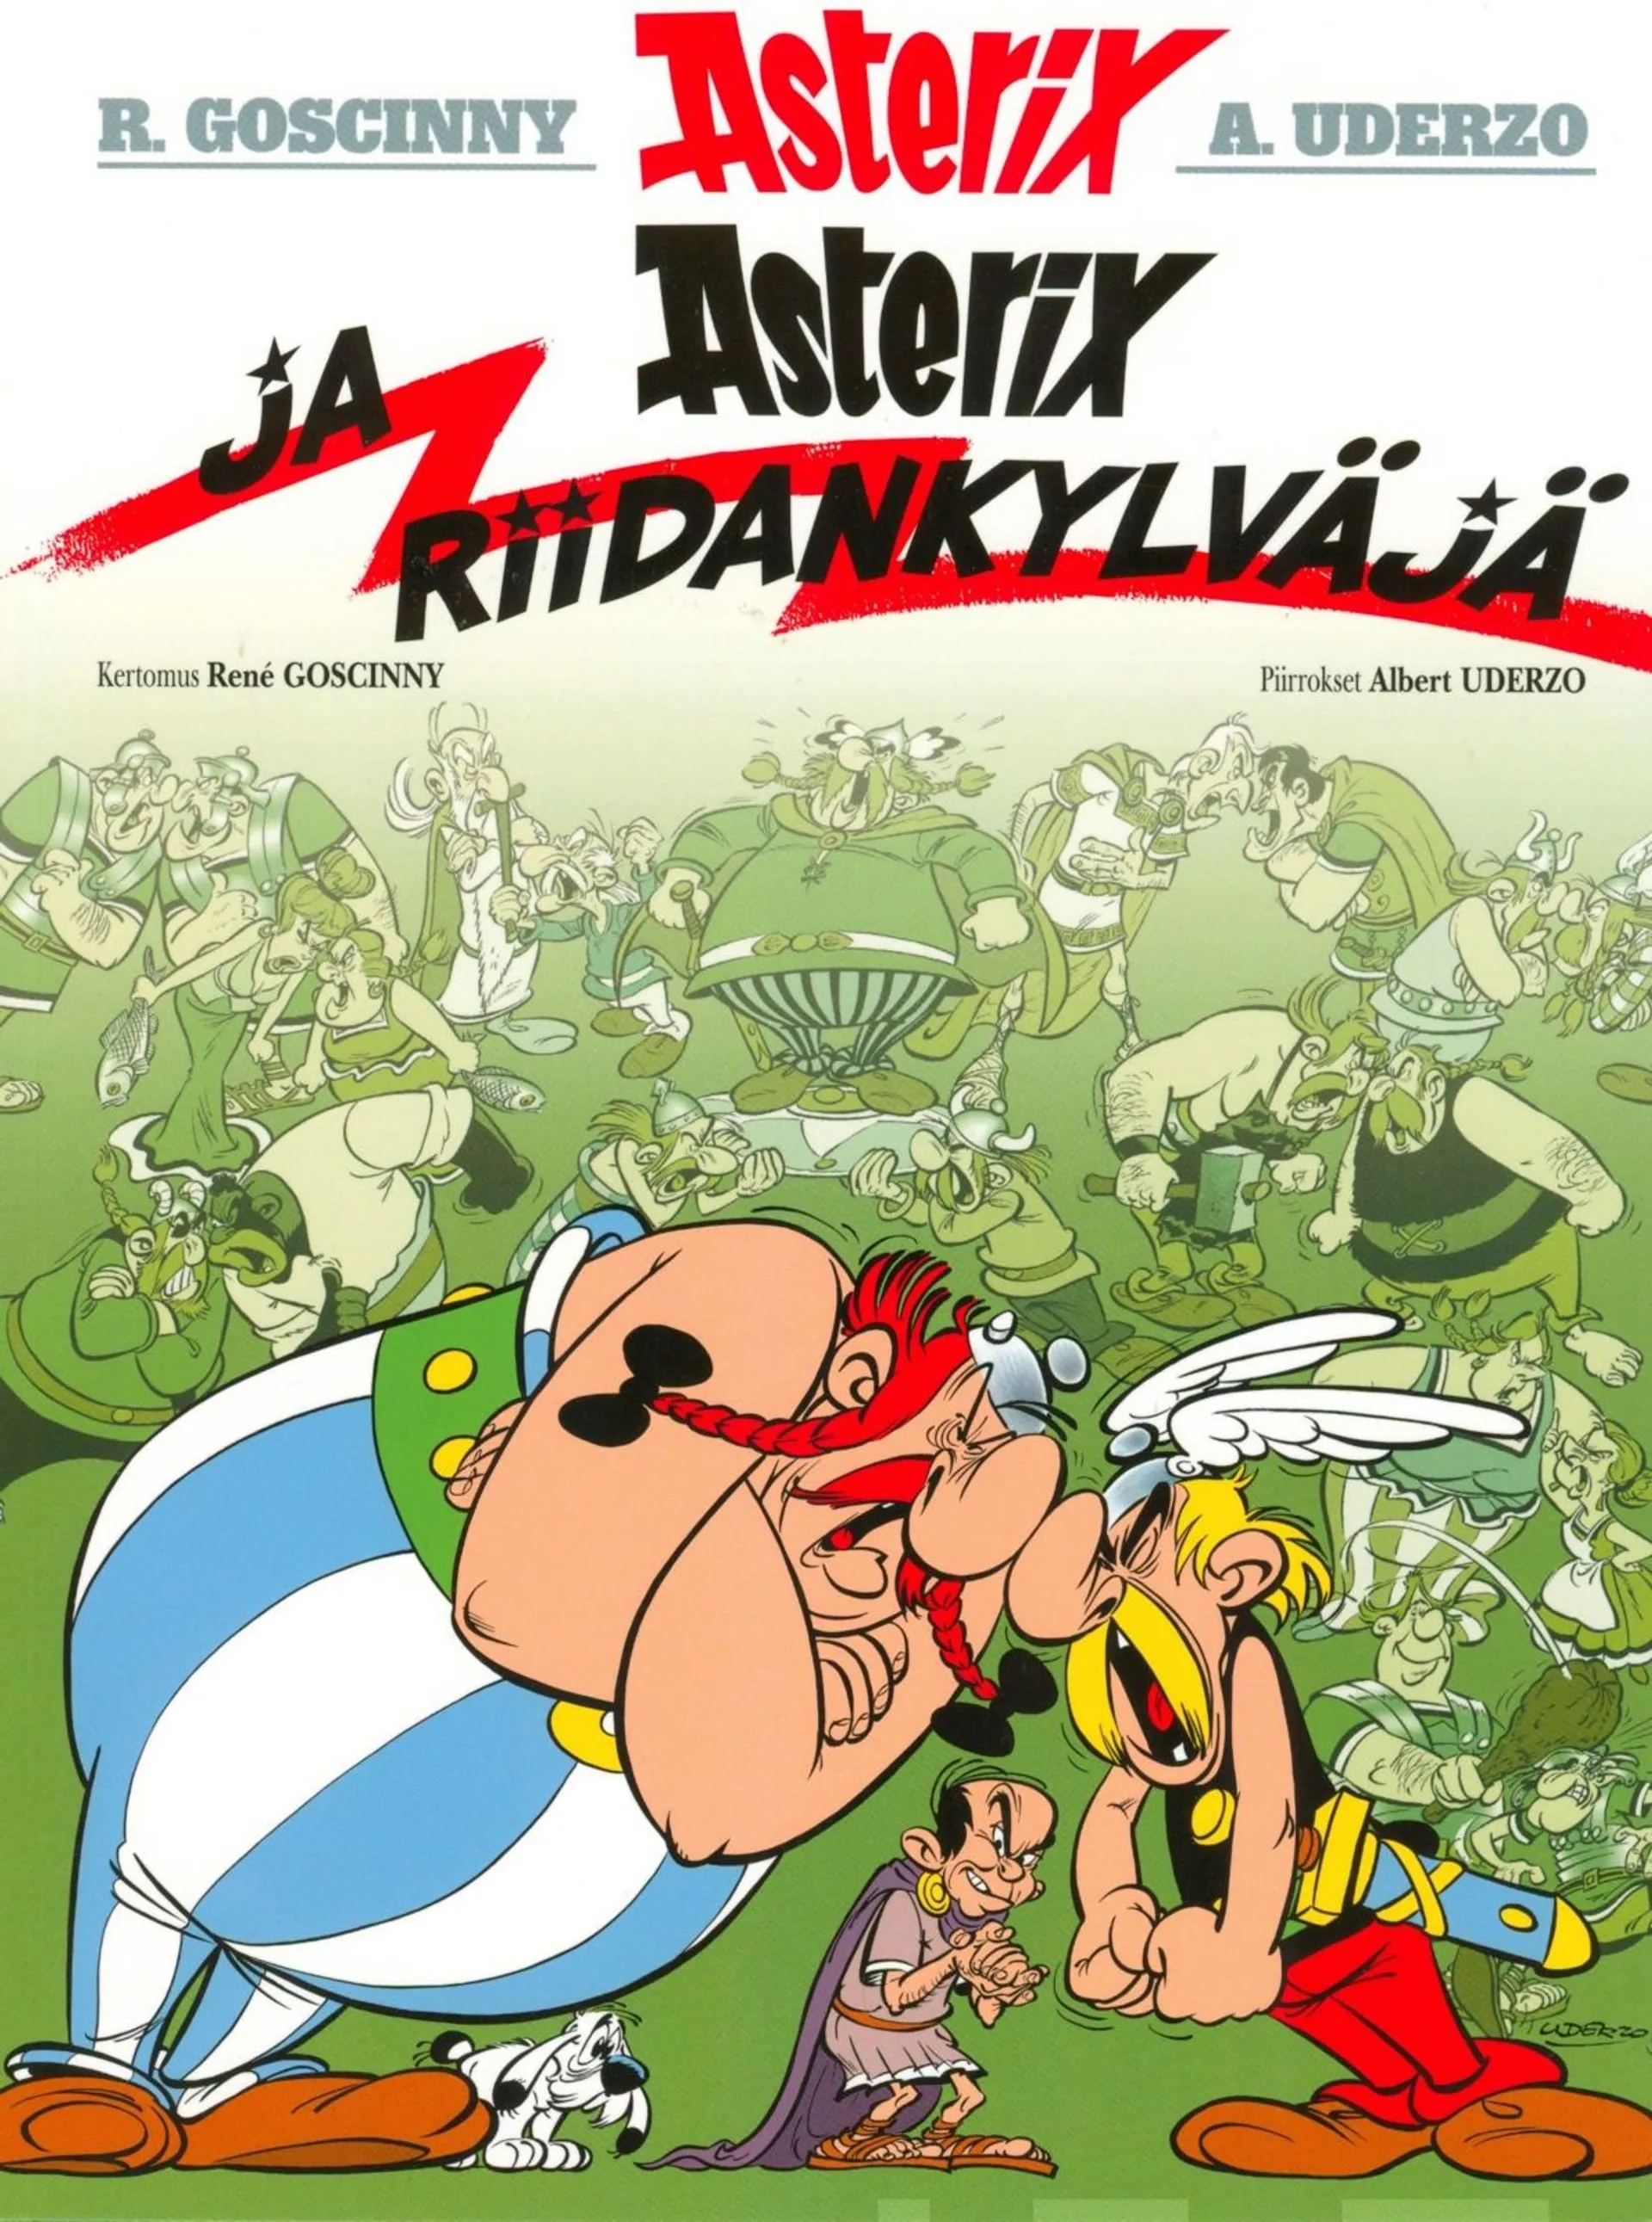 Goscinny, Asterix 15: Asterix ja riidankylväjä